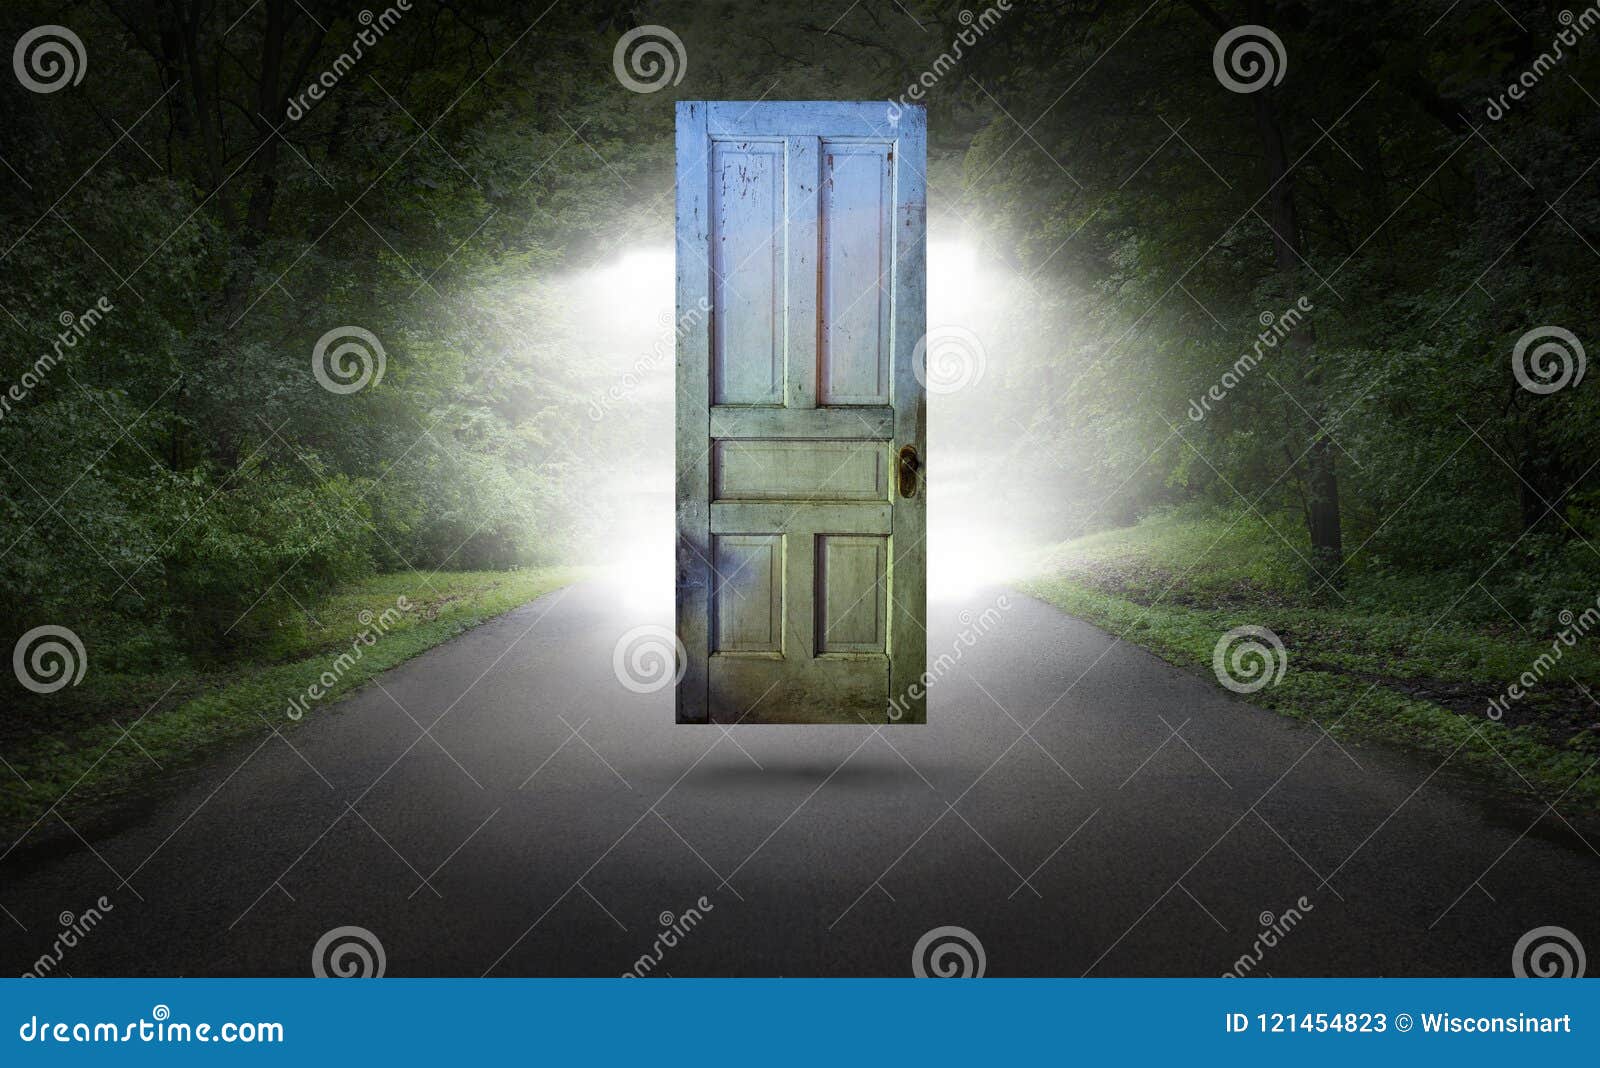 surreal door, road, highway, spiritual rebirth